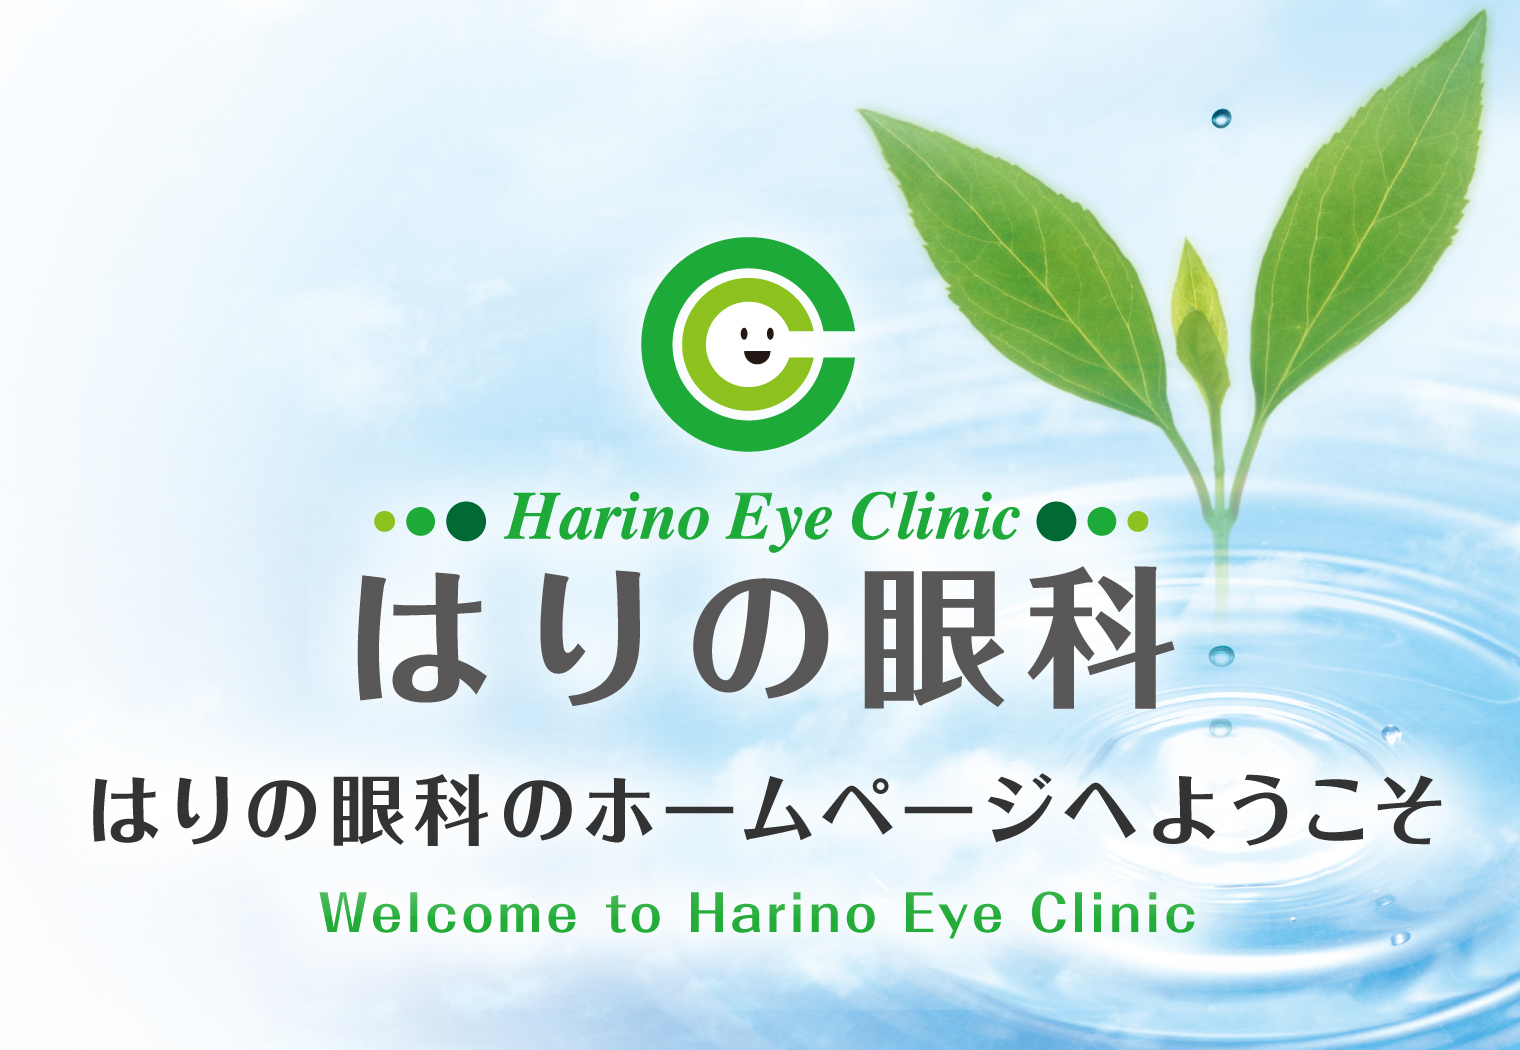 はりの眼科のホームページへようこそ　大阪市東淀川区で眼科をお探しなら、阪急京都線淡路駅、JRおおさか東線淡路駅すぐのはりの眼科にご相談ください。日帰り白内障手術・緑内障手術・硝子体注射、外眼手術まで幅広く診療しています。